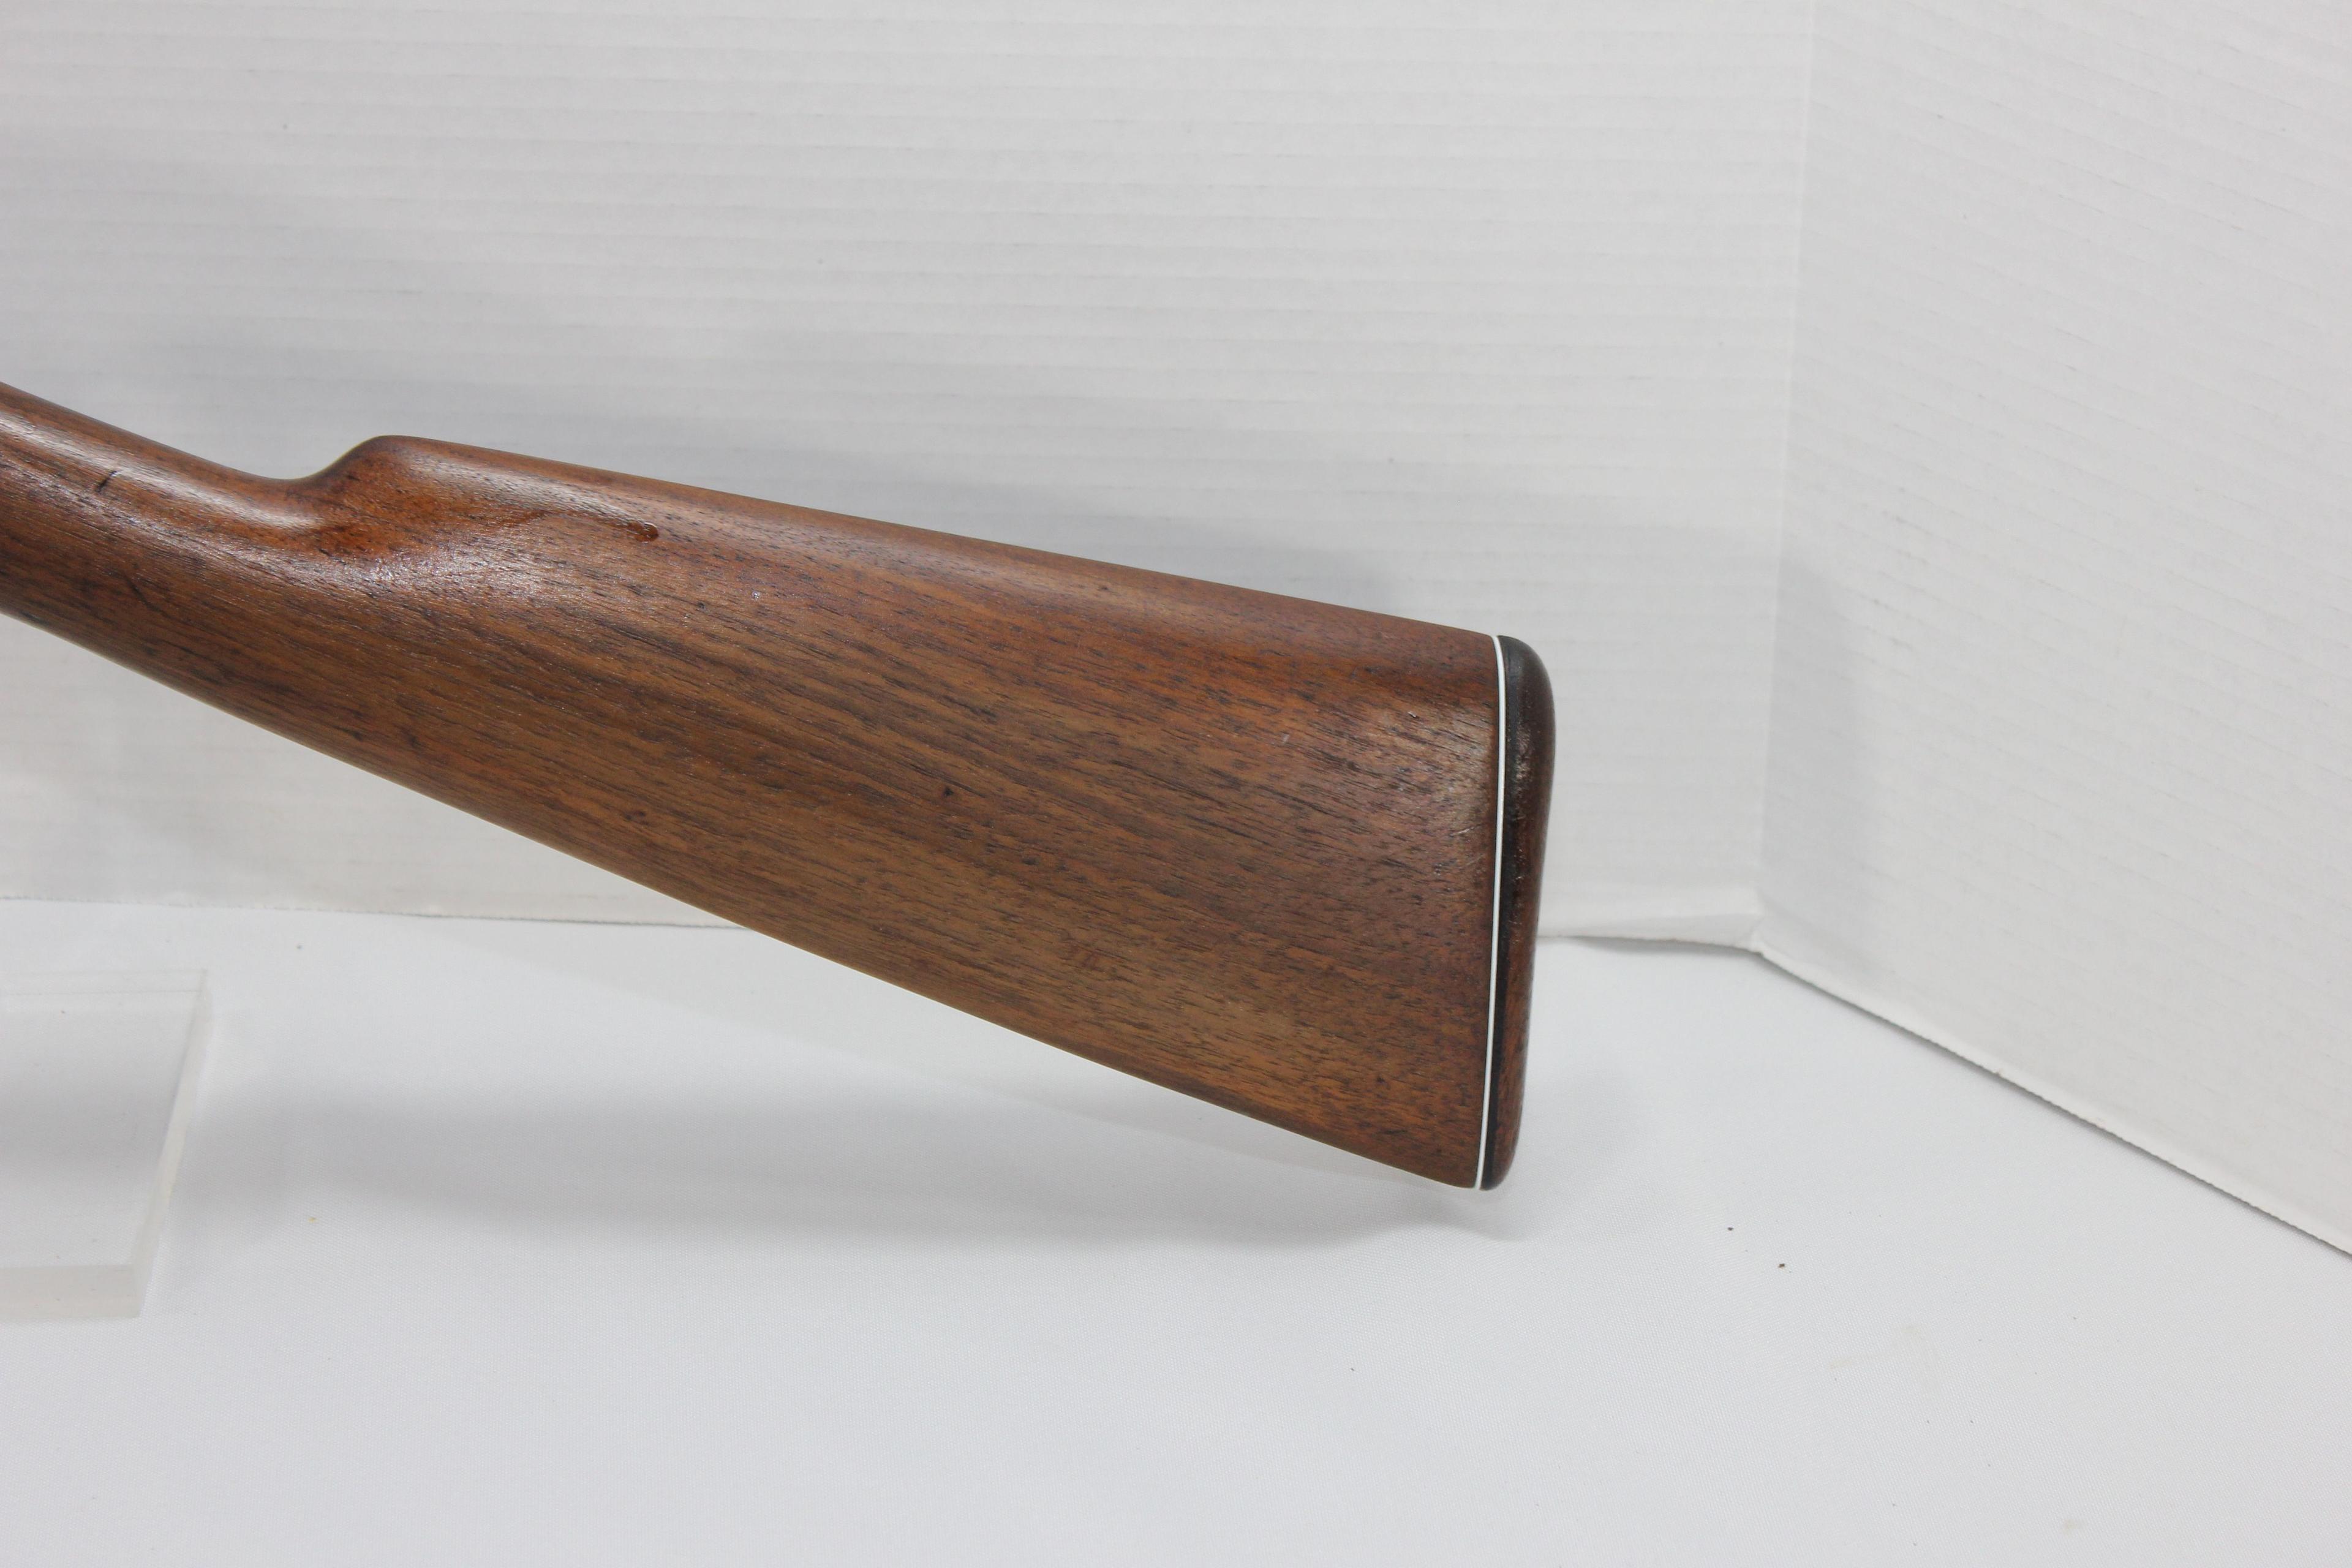 Remington Model 12 .22 S/L/LR Take Down Tube Fed Pump Action Rifle; SN 790975